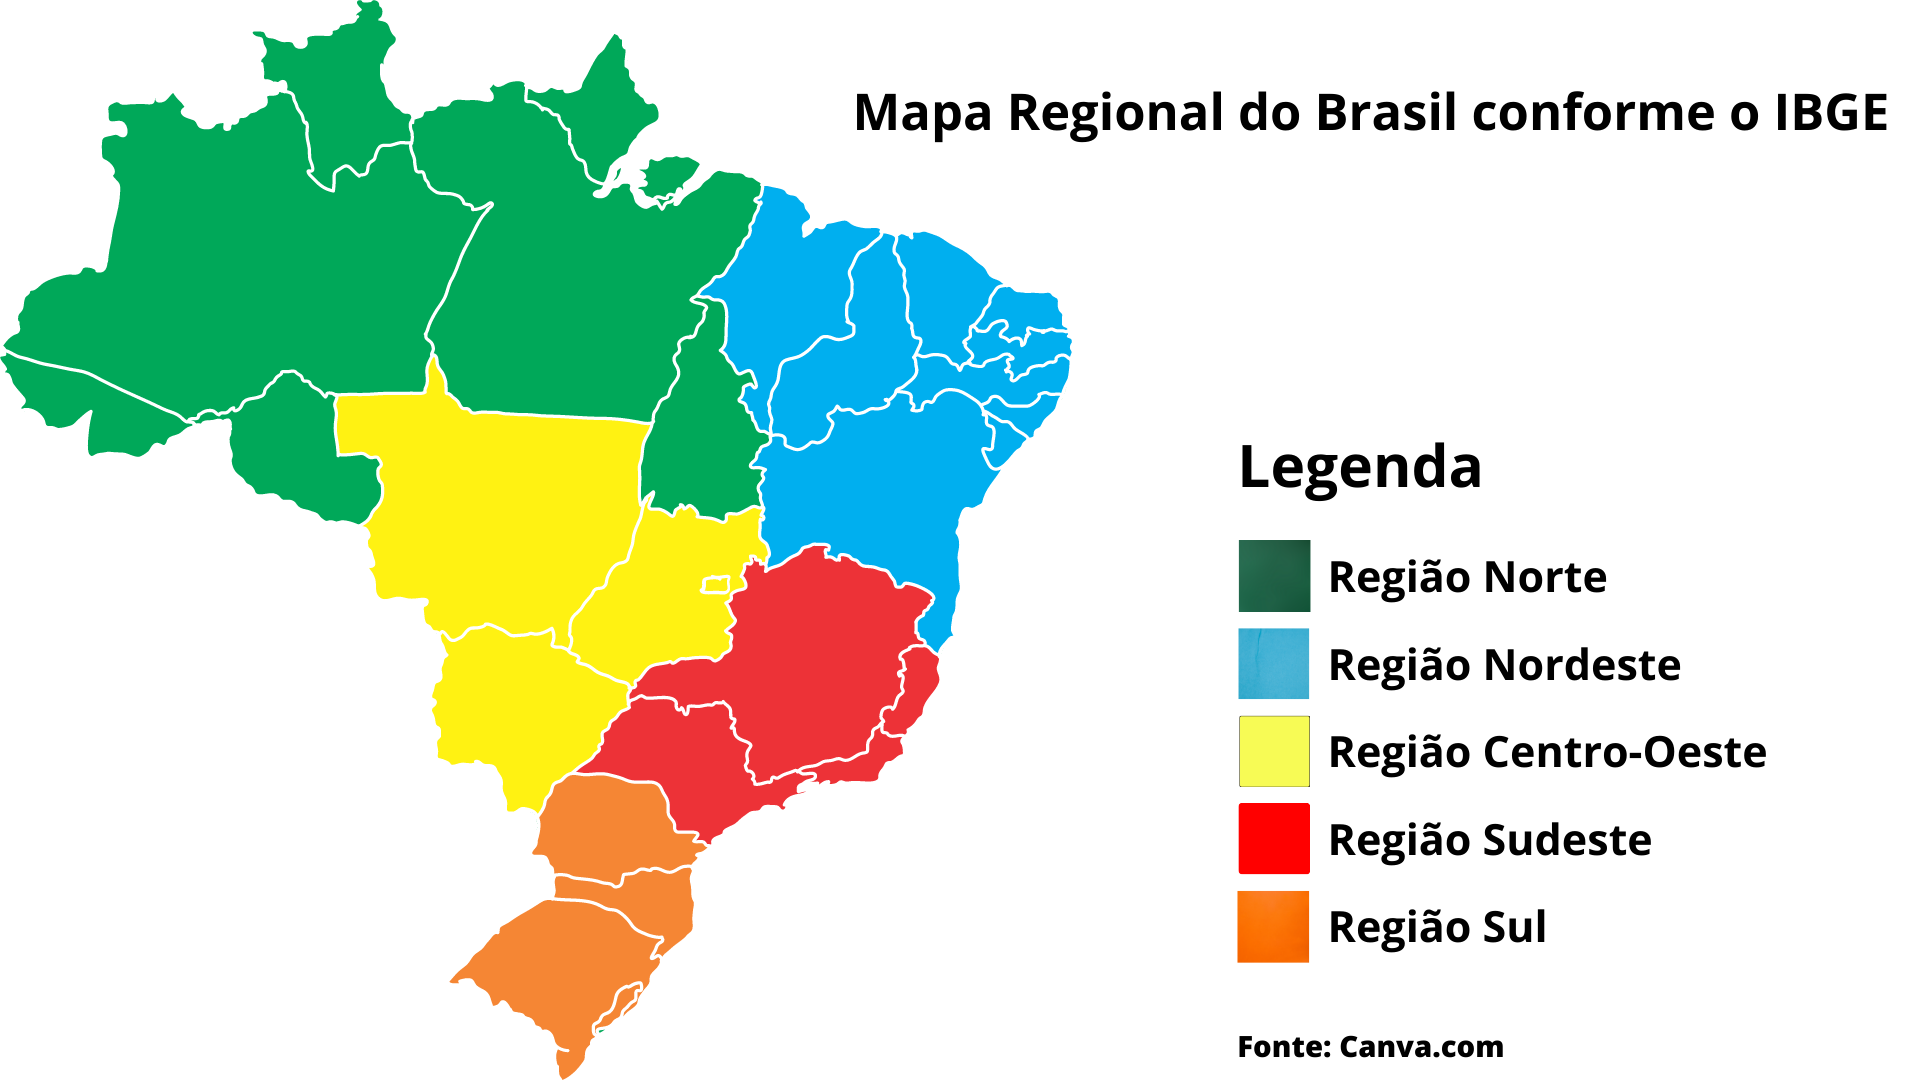 O processo de divisão regional do território brasileiro